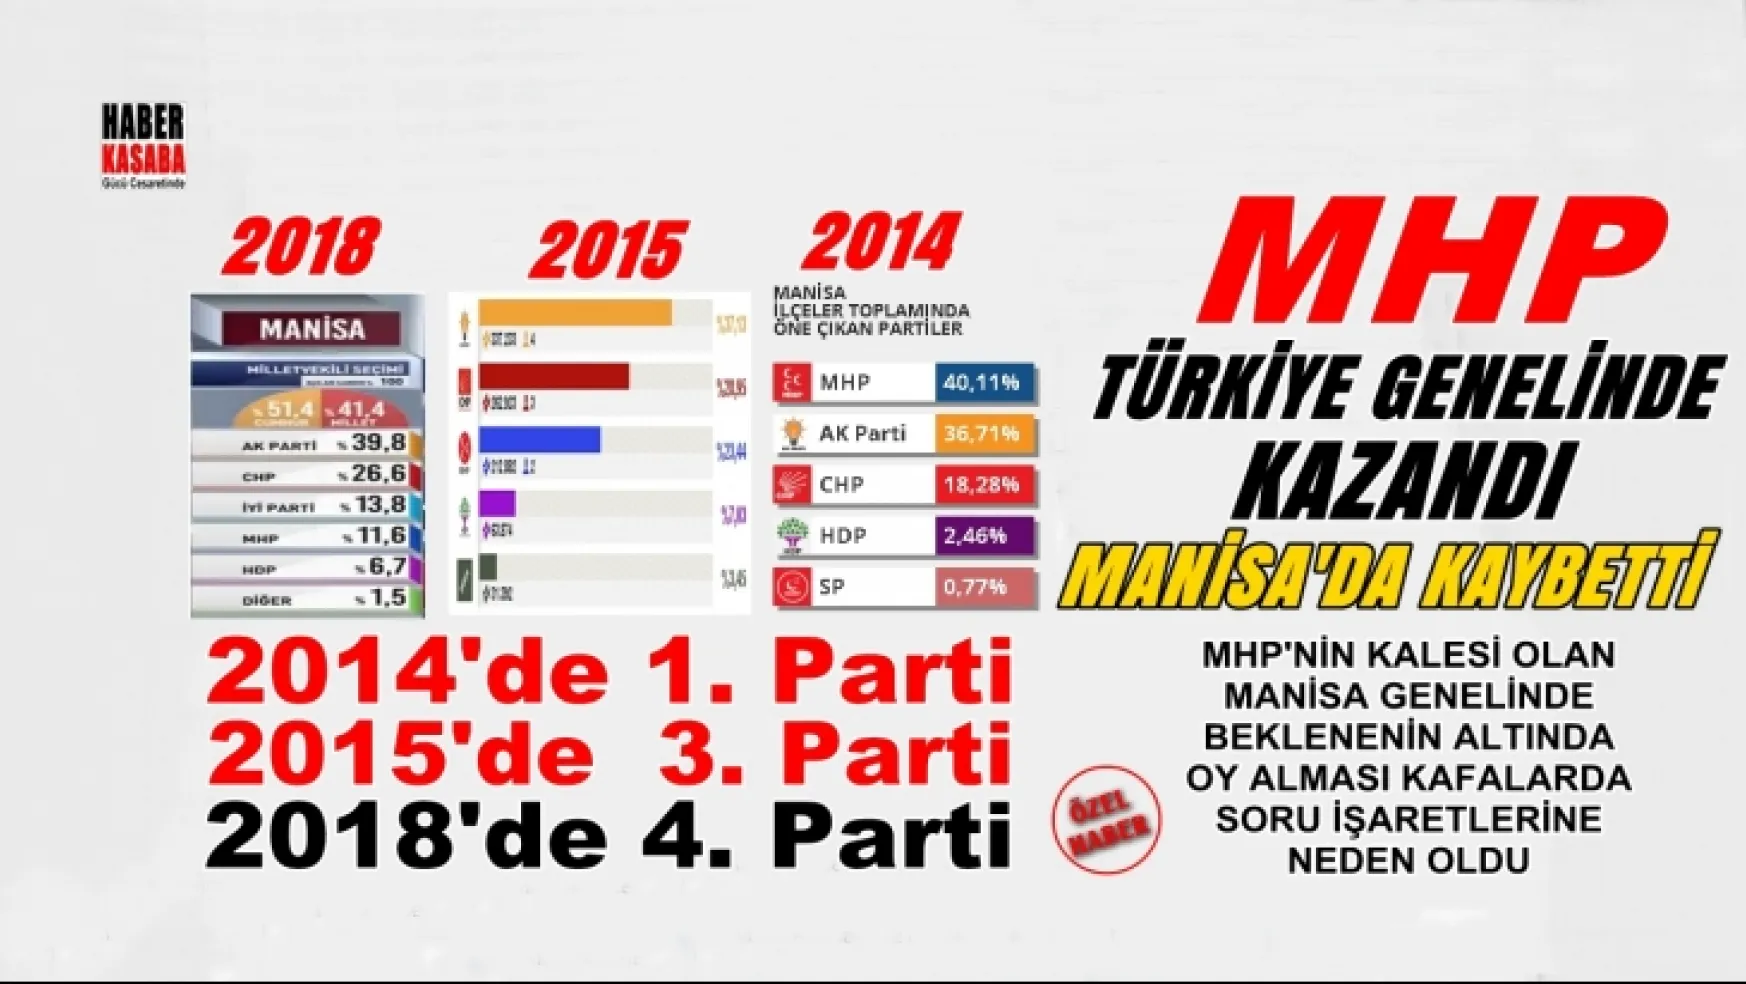 Türkiye Genelin'de Kazanan MHP Manisa'da Kaybetti